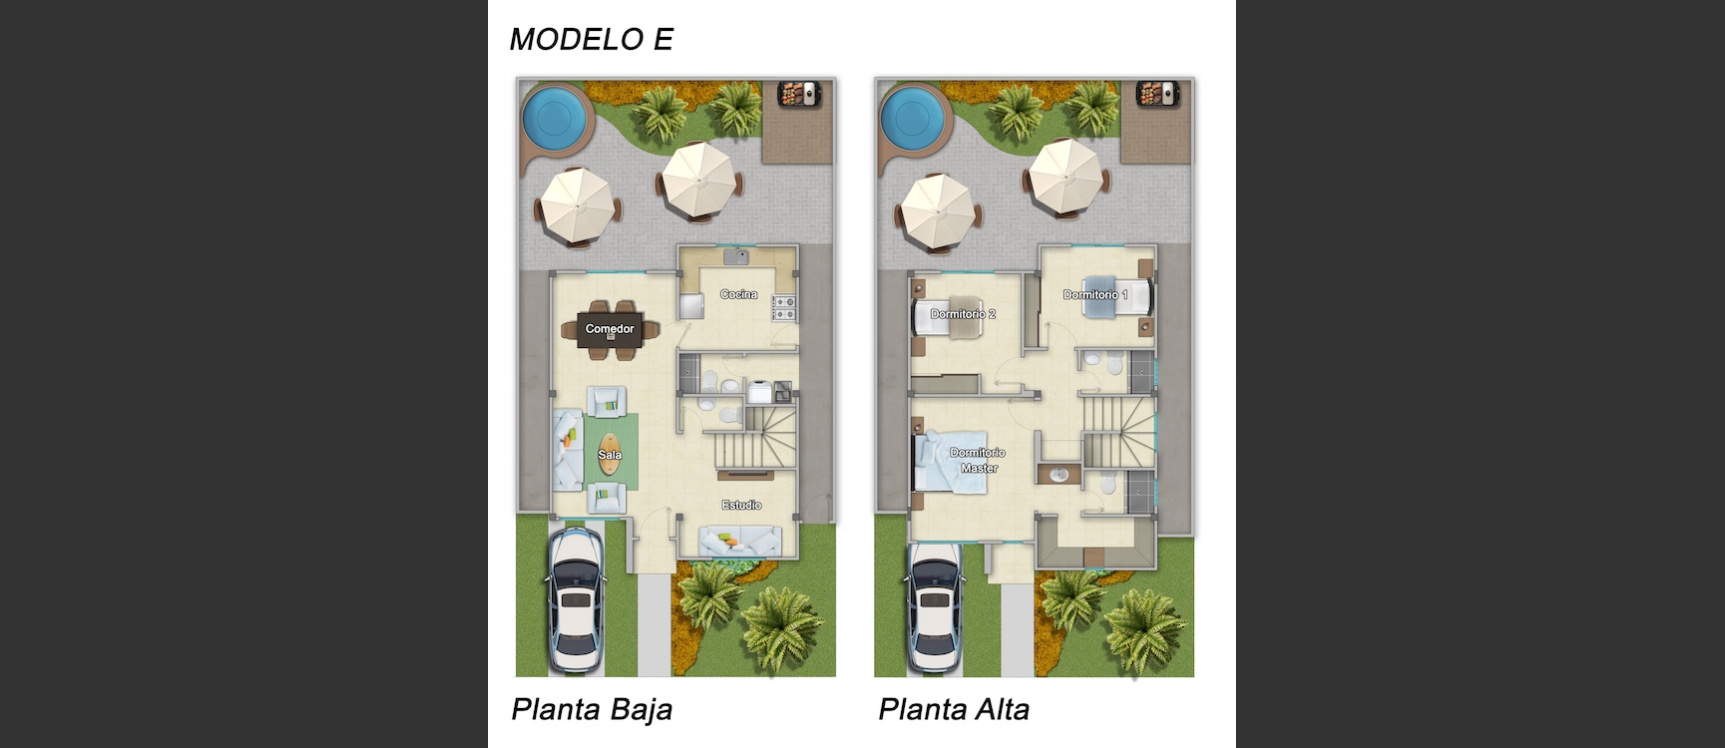 GeoBienes - Modelo E casa en venta con 3 dormitorios en Costa Real - Plusvalia Guayaquil Casas de venta y alquiler Inmobiliaria Ecuador